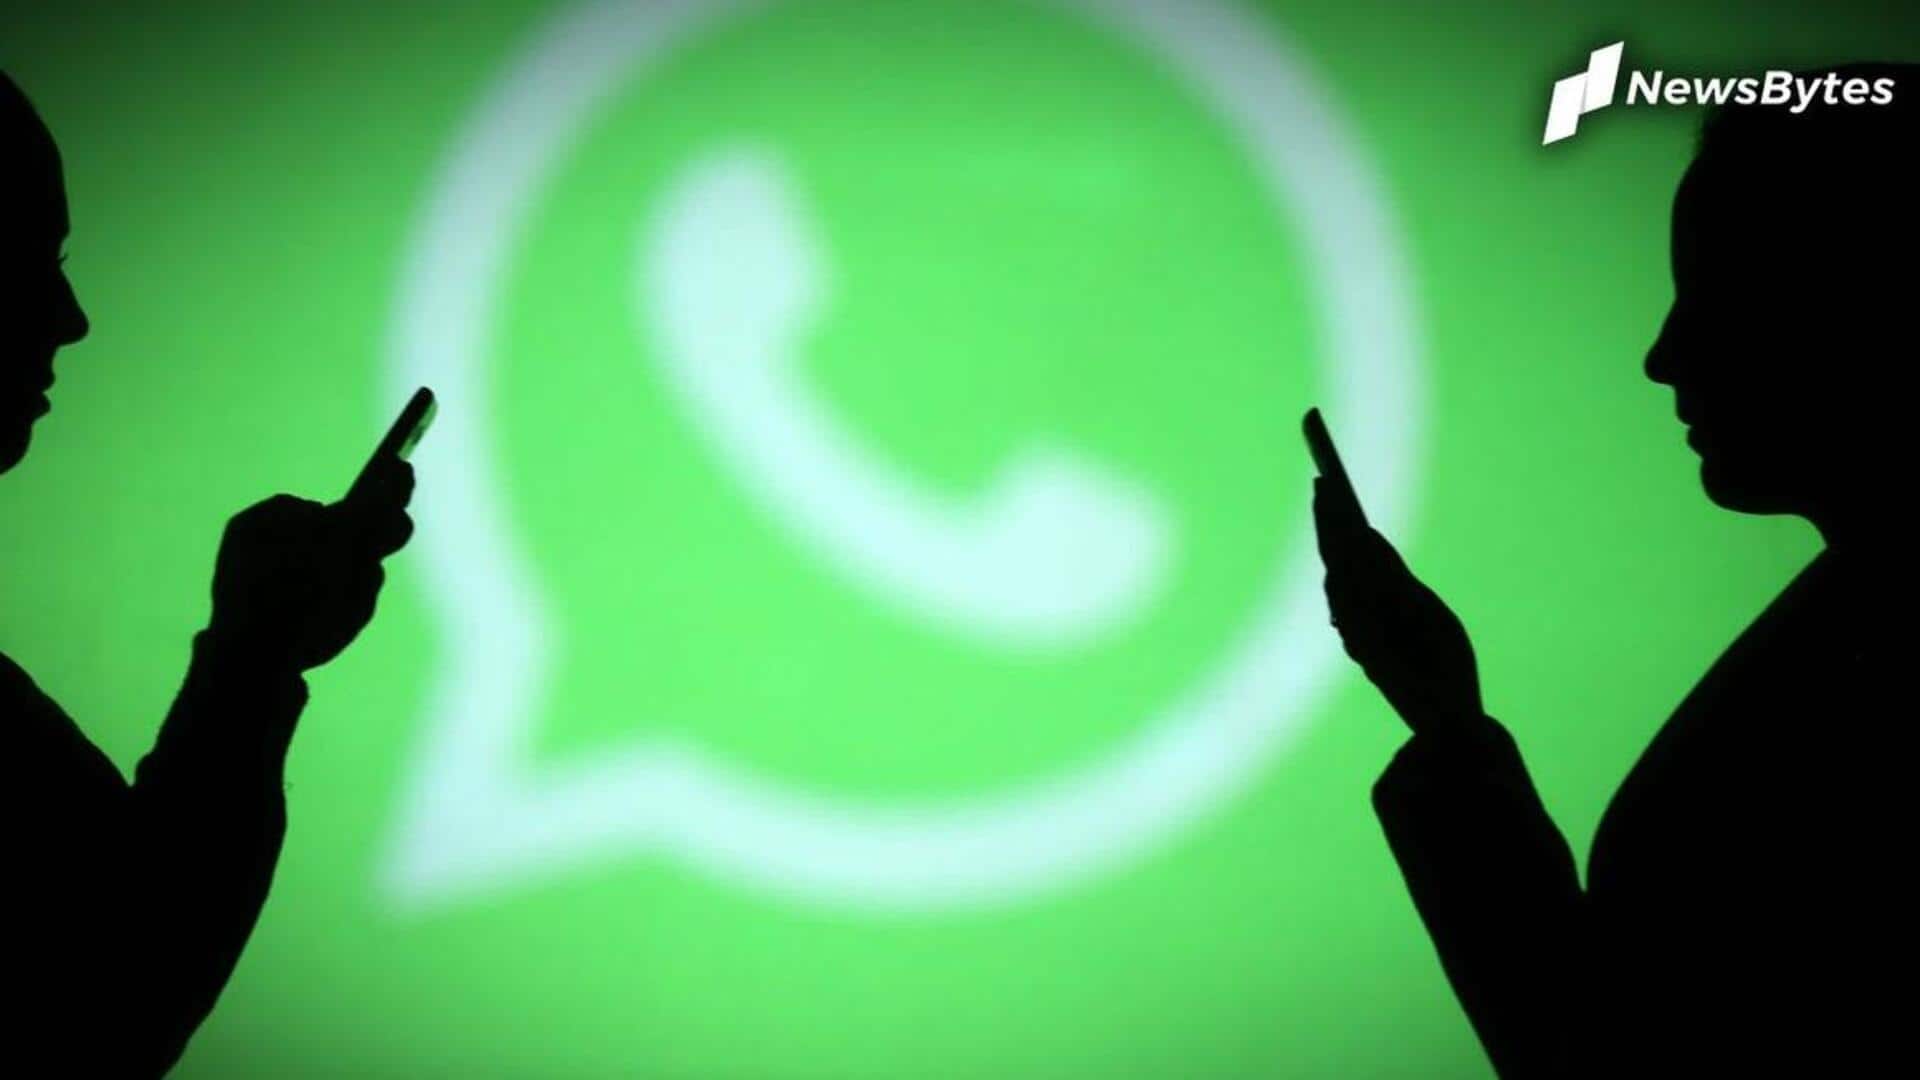 व्हाट्सऐप ने मई में 65 लाख भारतीय अकाउंट्स पर लगाया प्रतिबंध